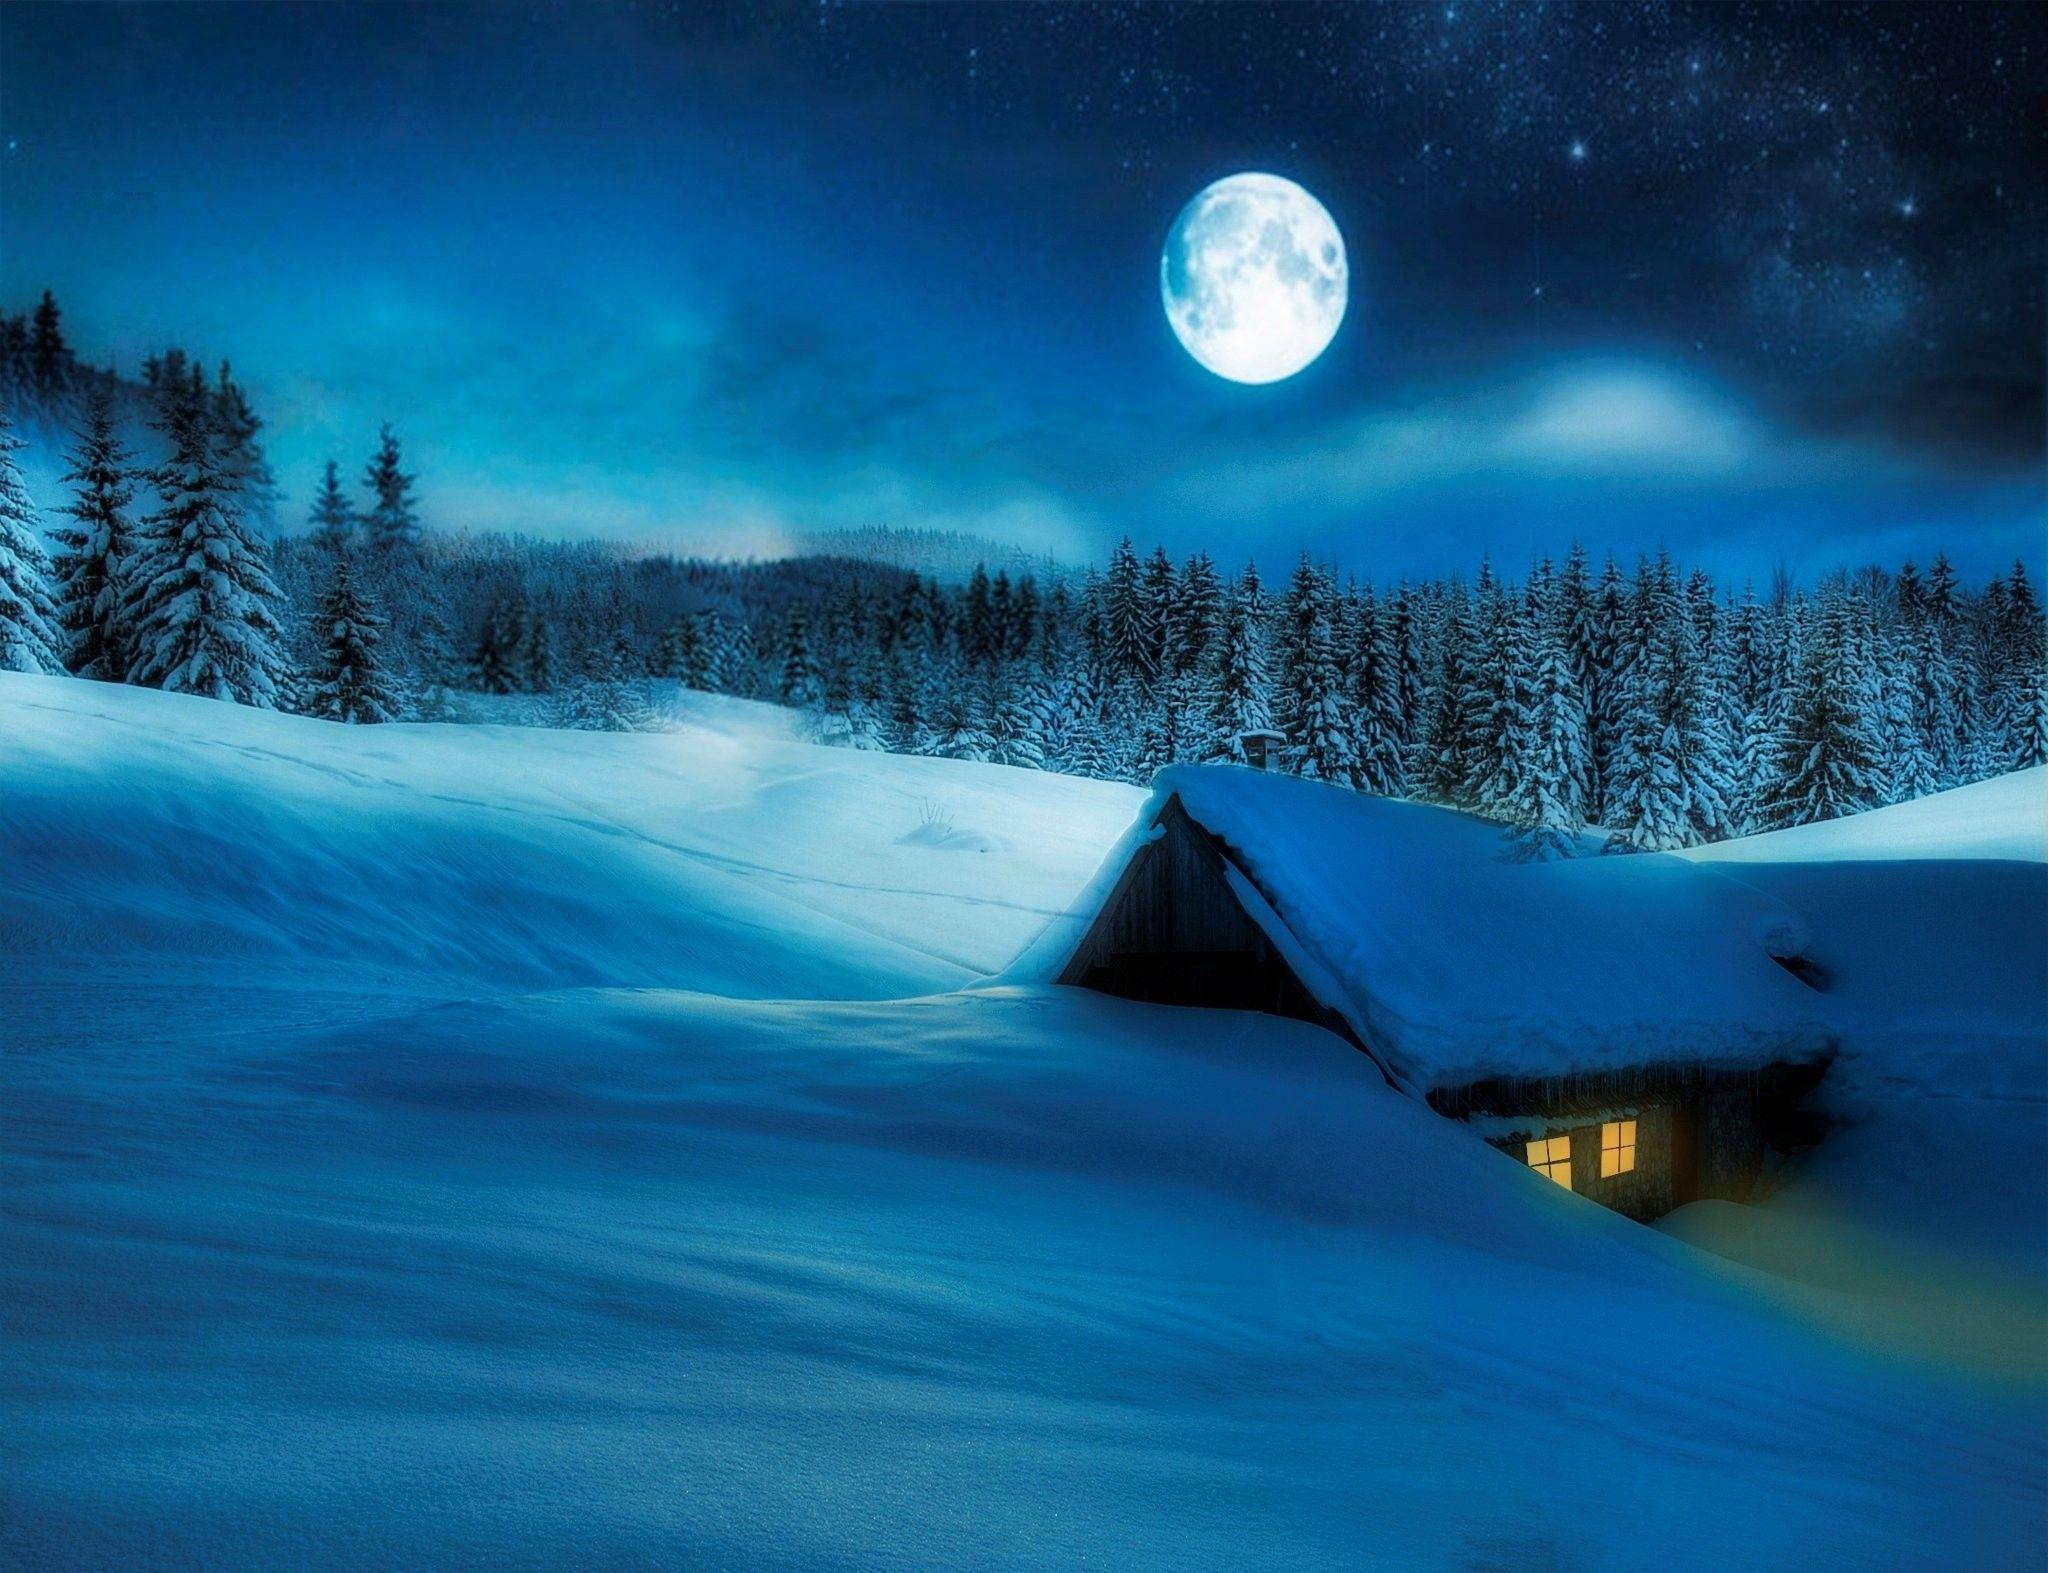 Winter: Night Winter Snow Moon Scene Landscape Desktop Wallpaper